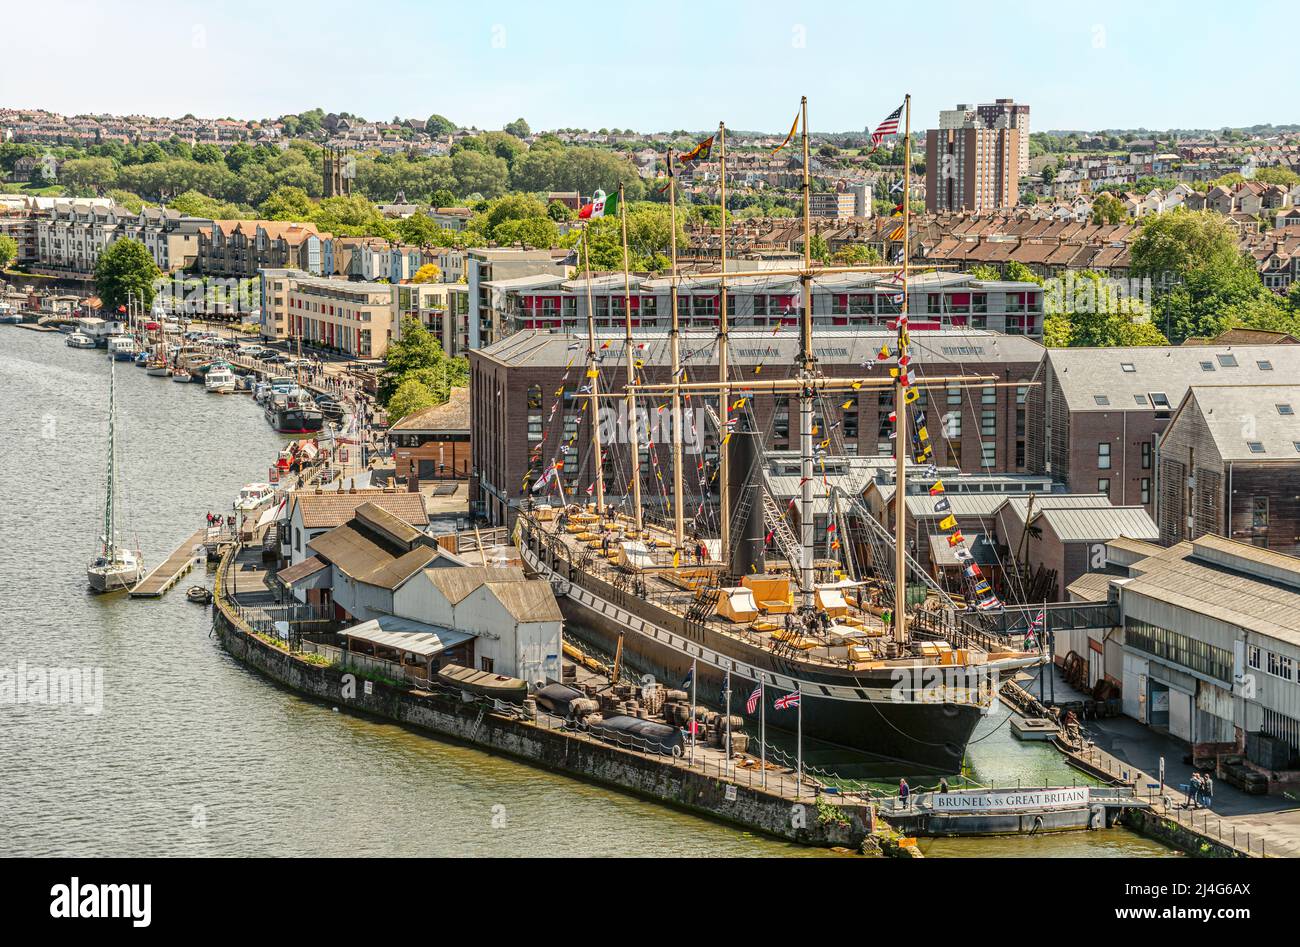 Brunels SS Great Britain è una nave museo ed ex piroscafo passeggeri a Bristol Harbour, Somerset, England, UK | Brunels SS Great Britain Museu Foto Stock